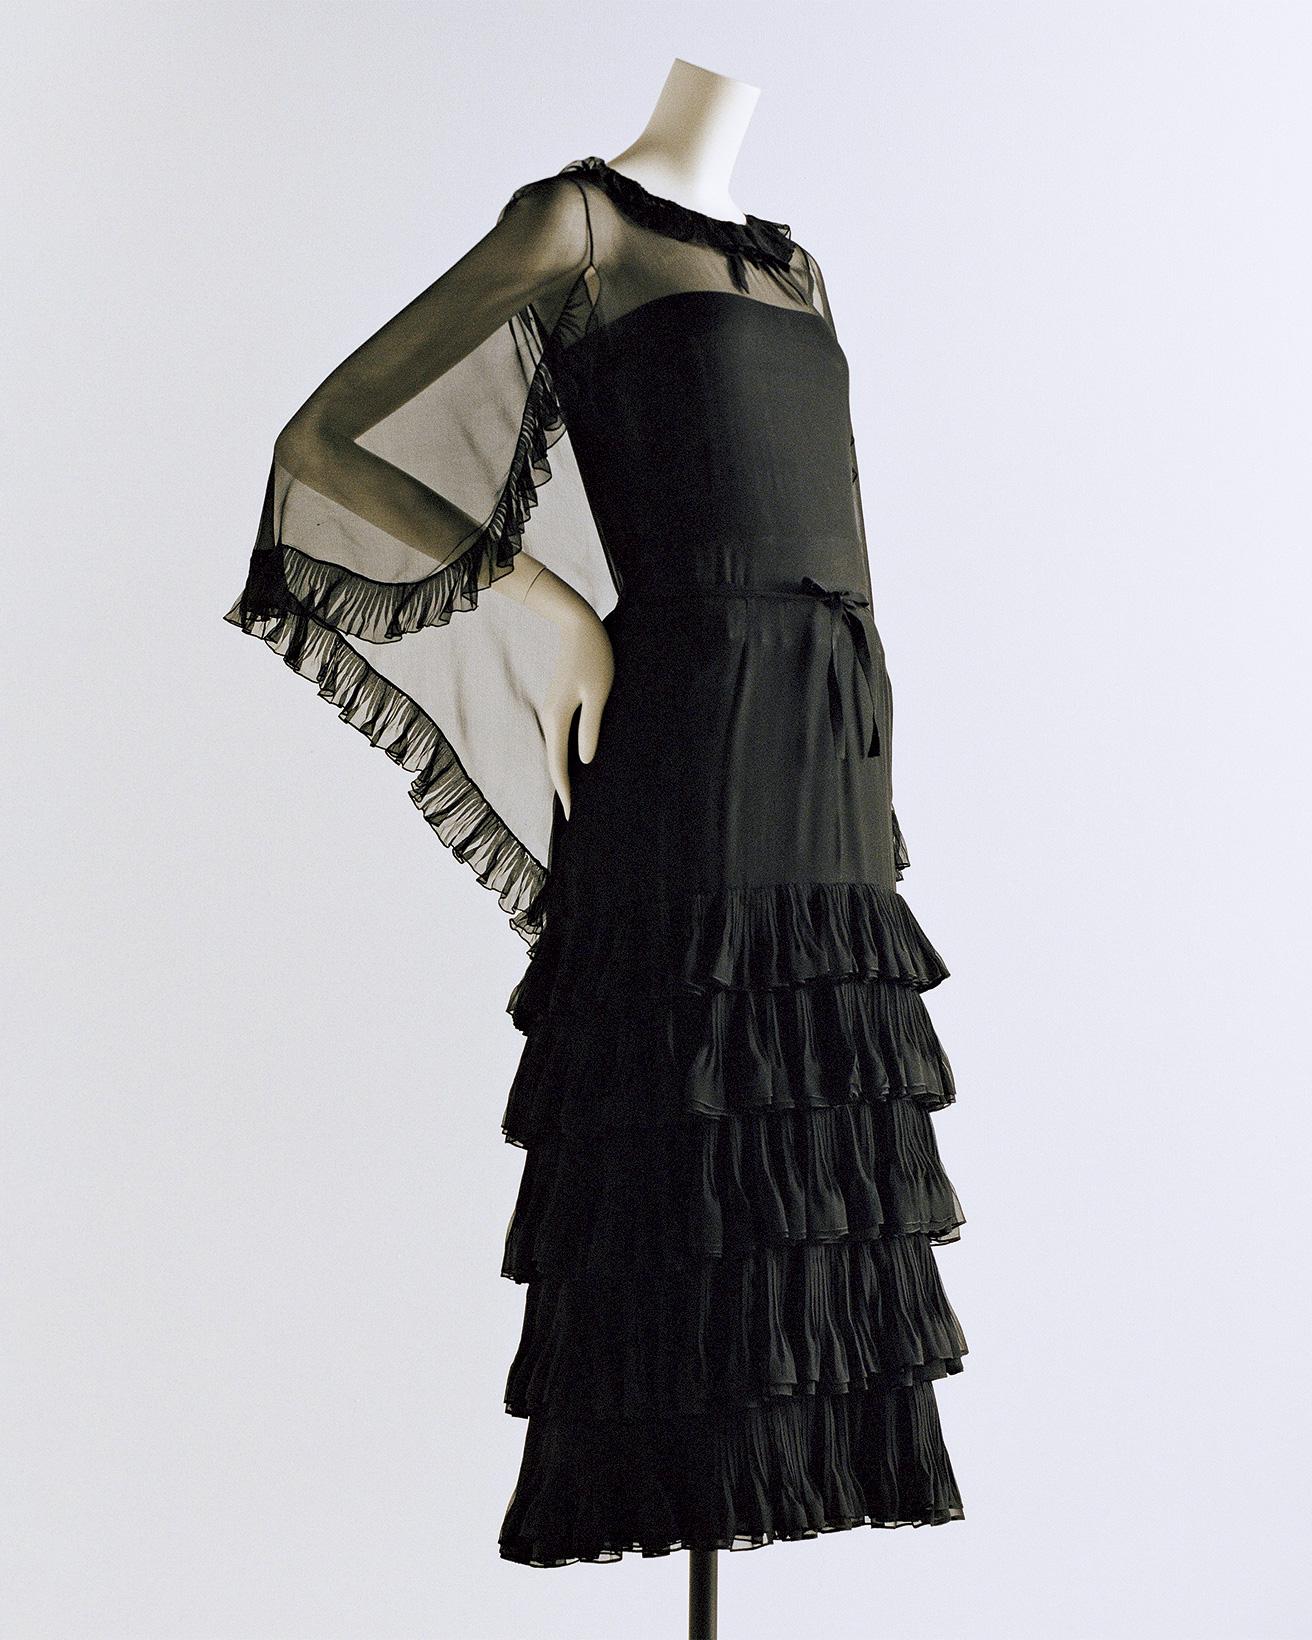 ［1966］黒で統一したドレス
1966年の春夏シーズンに発表したドレス。ガブリエル・シャネル 絹モスリン、グログラン。（パリ、パトリモアンヌ・シャネル）